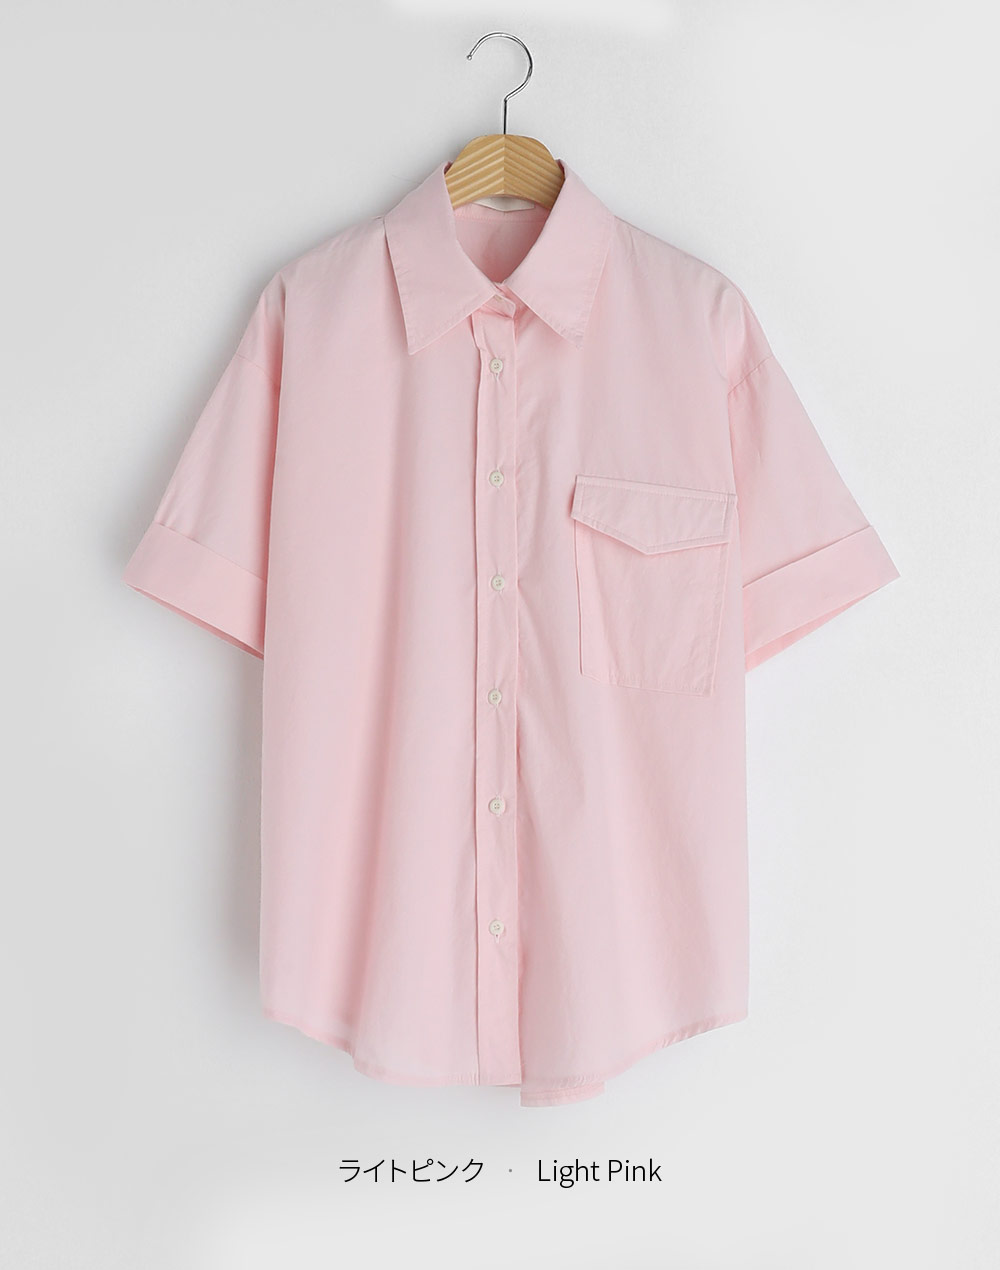 ロールアップ半袖シャツ・t283359（ブラウス/シャツ）| kanasanpo_1106 | 東京ガールズマーケット